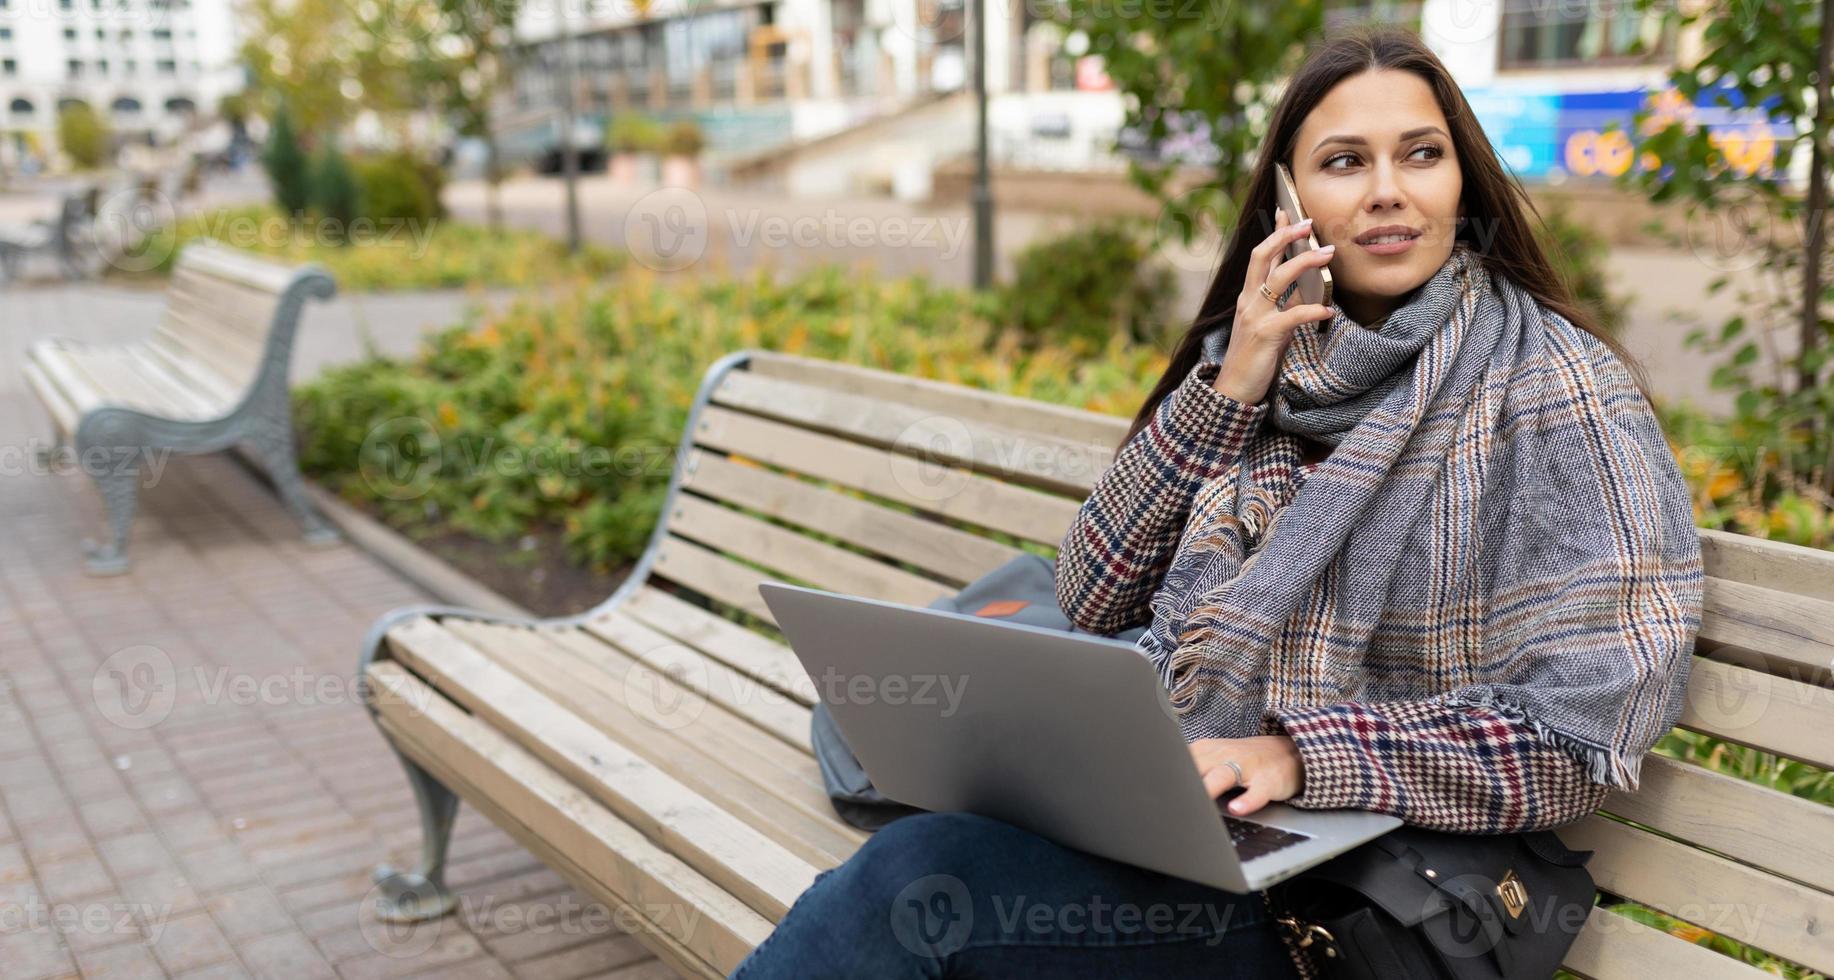 kvinna frilansare arbetssätt uppkopplad på bärbar dator medan Sammanträde i stad på trä- bänkar foto